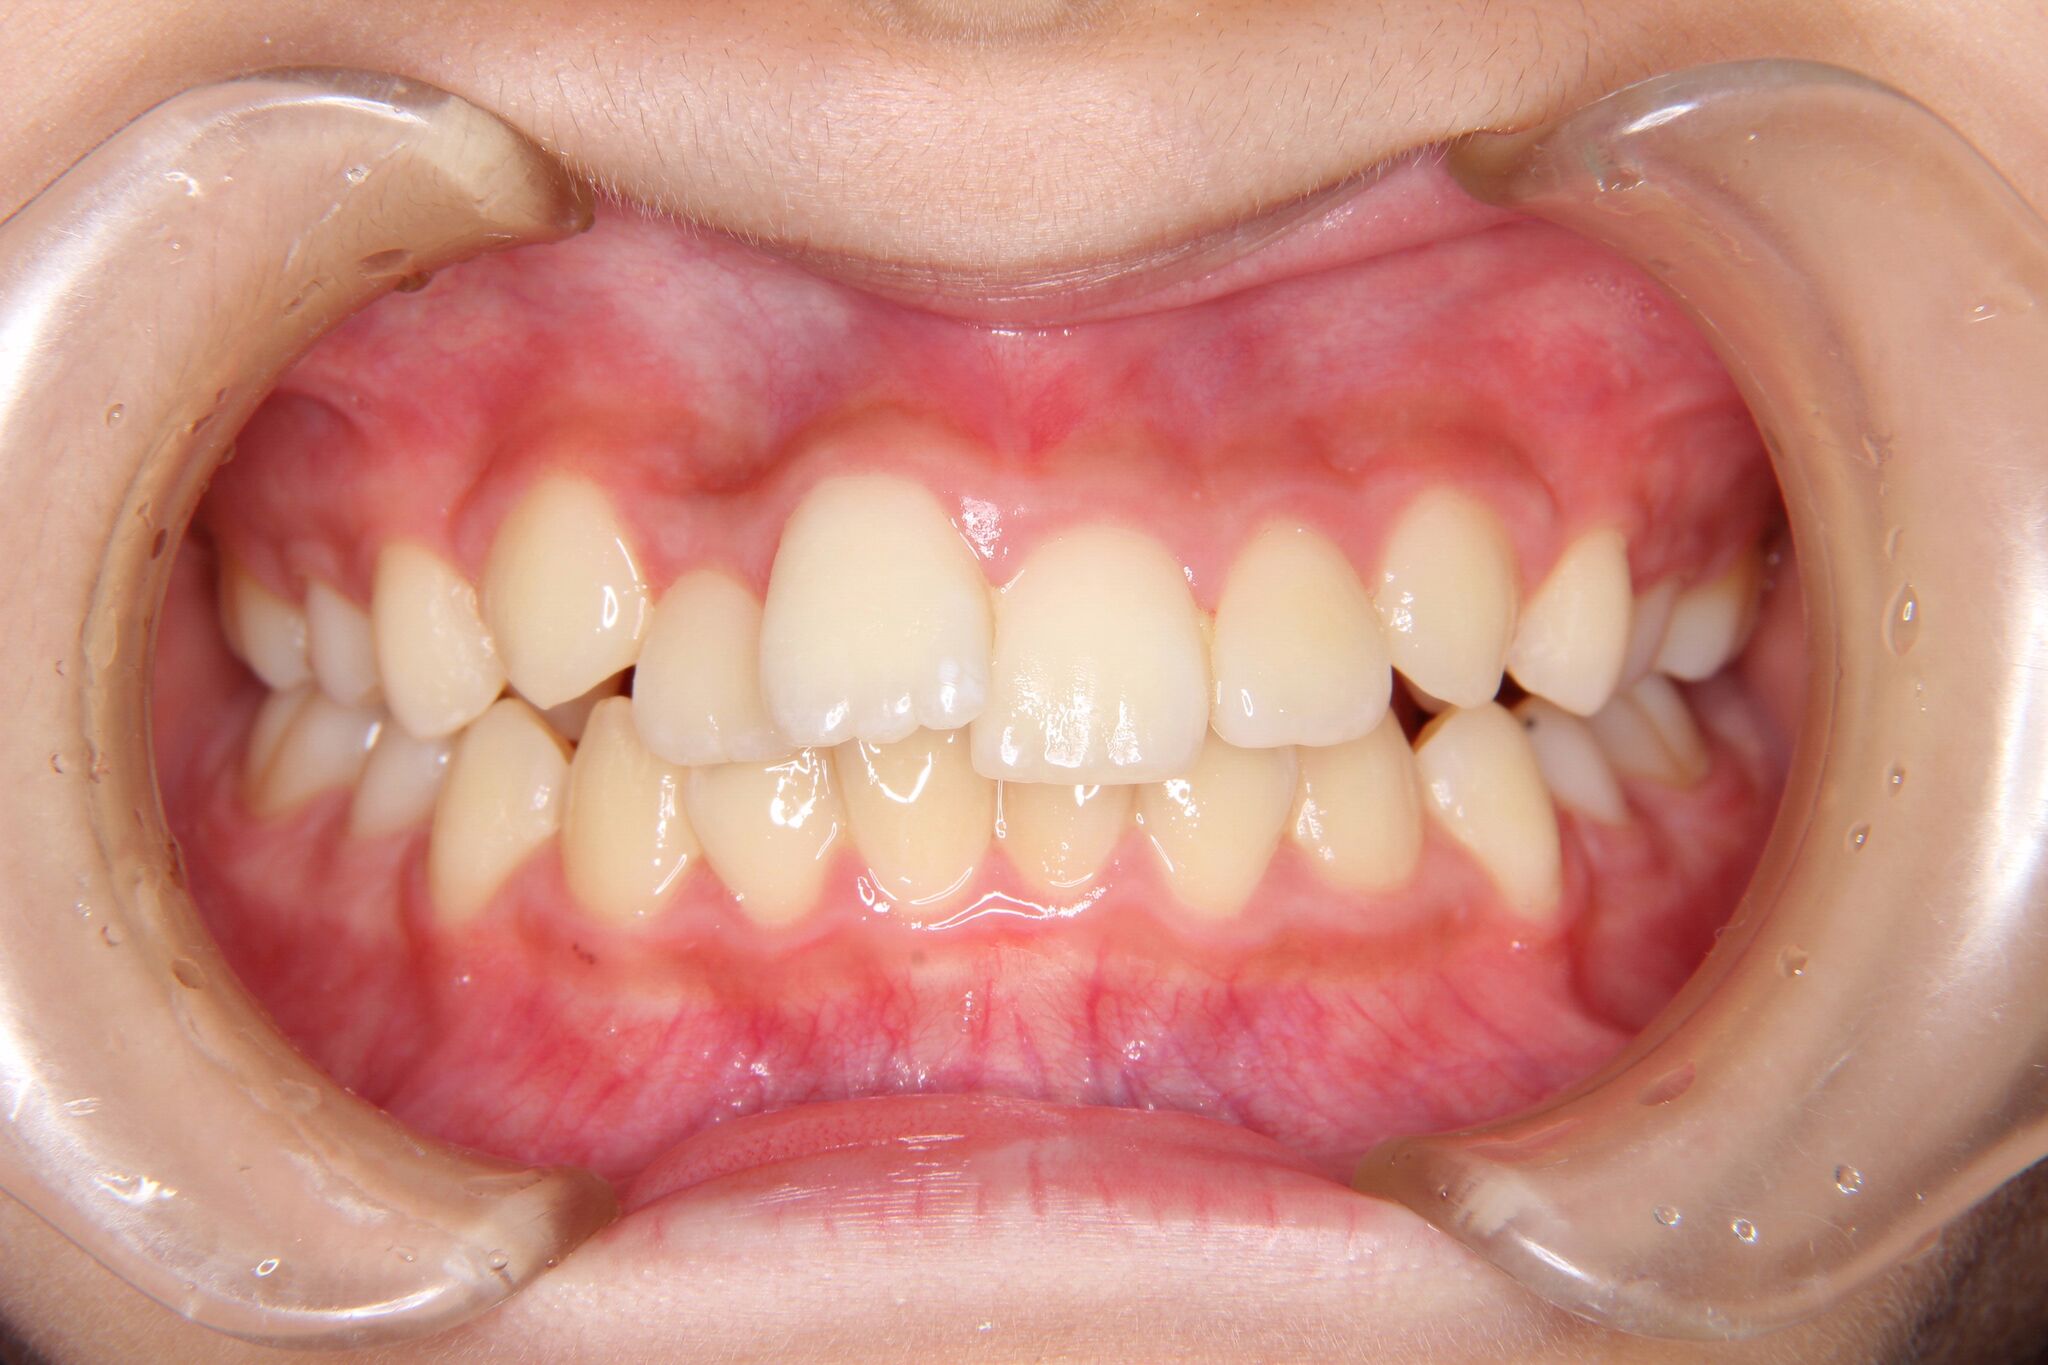 【中学生女子】上顎前歯部がたがた歯の矯正歯科治療